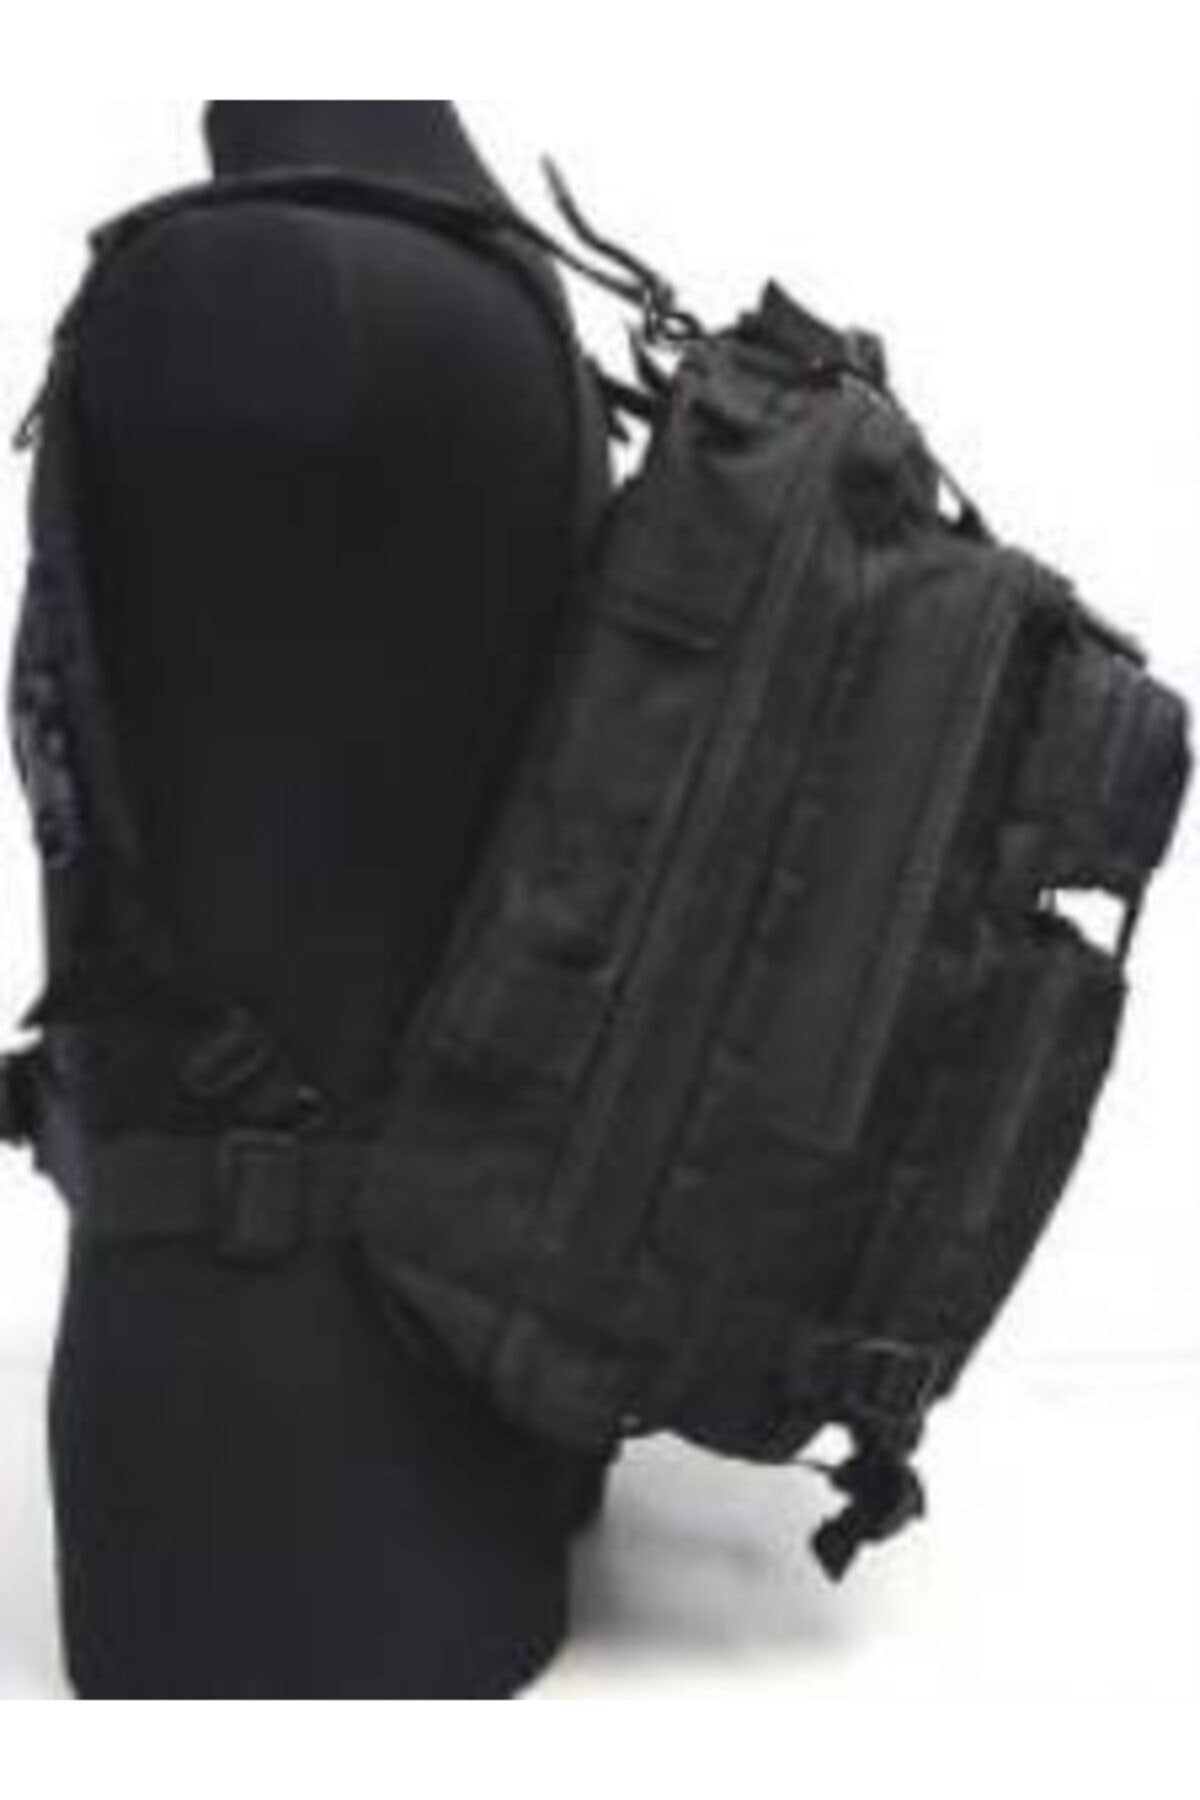 IŞIK Tactical Çanta Siyah Askeri Çanta